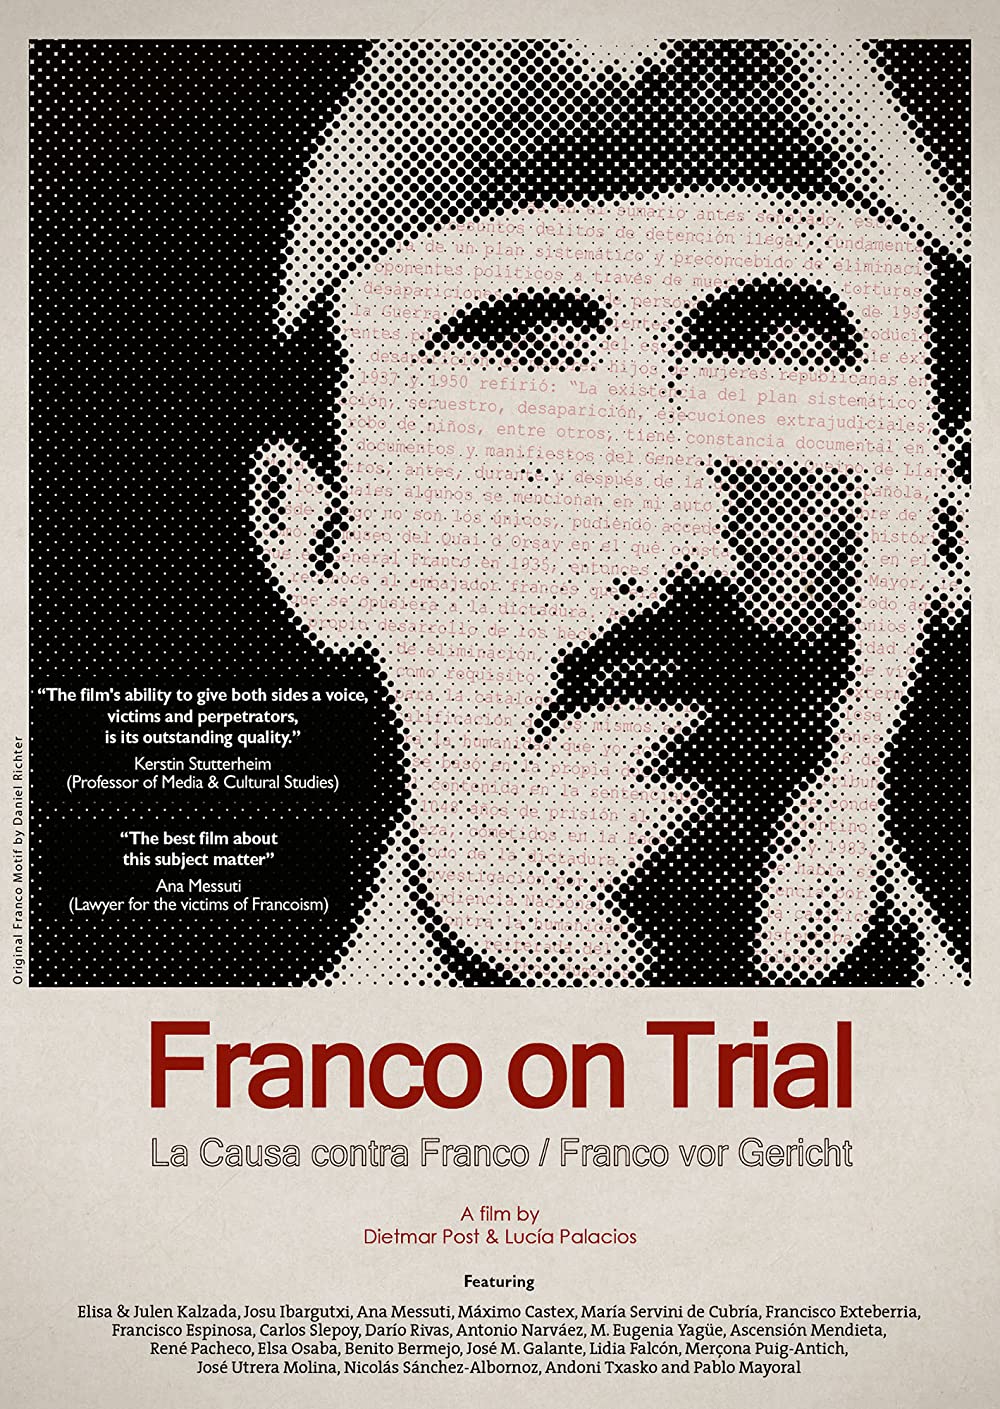 Filmbeschreibung zu Franco vor Gericht: Das Spanische Nürnberg?